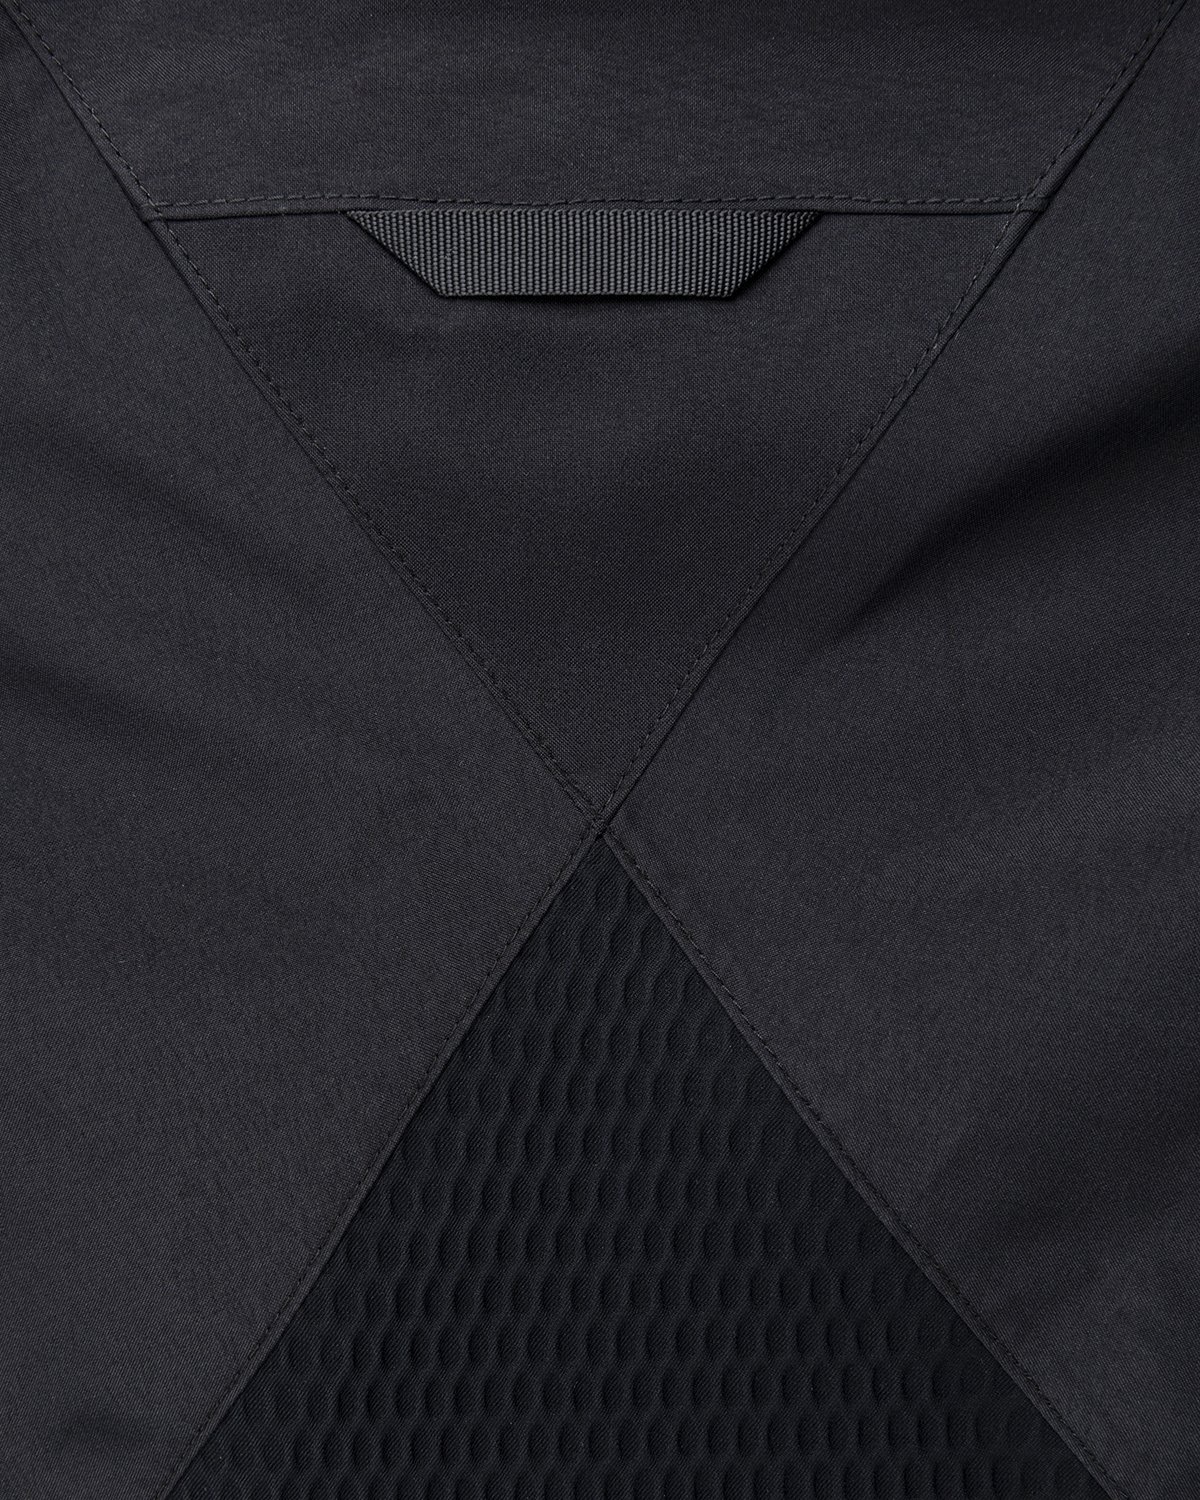 ACRONYM - J16-GT Jacket Black - Clothing - Black - Image 3